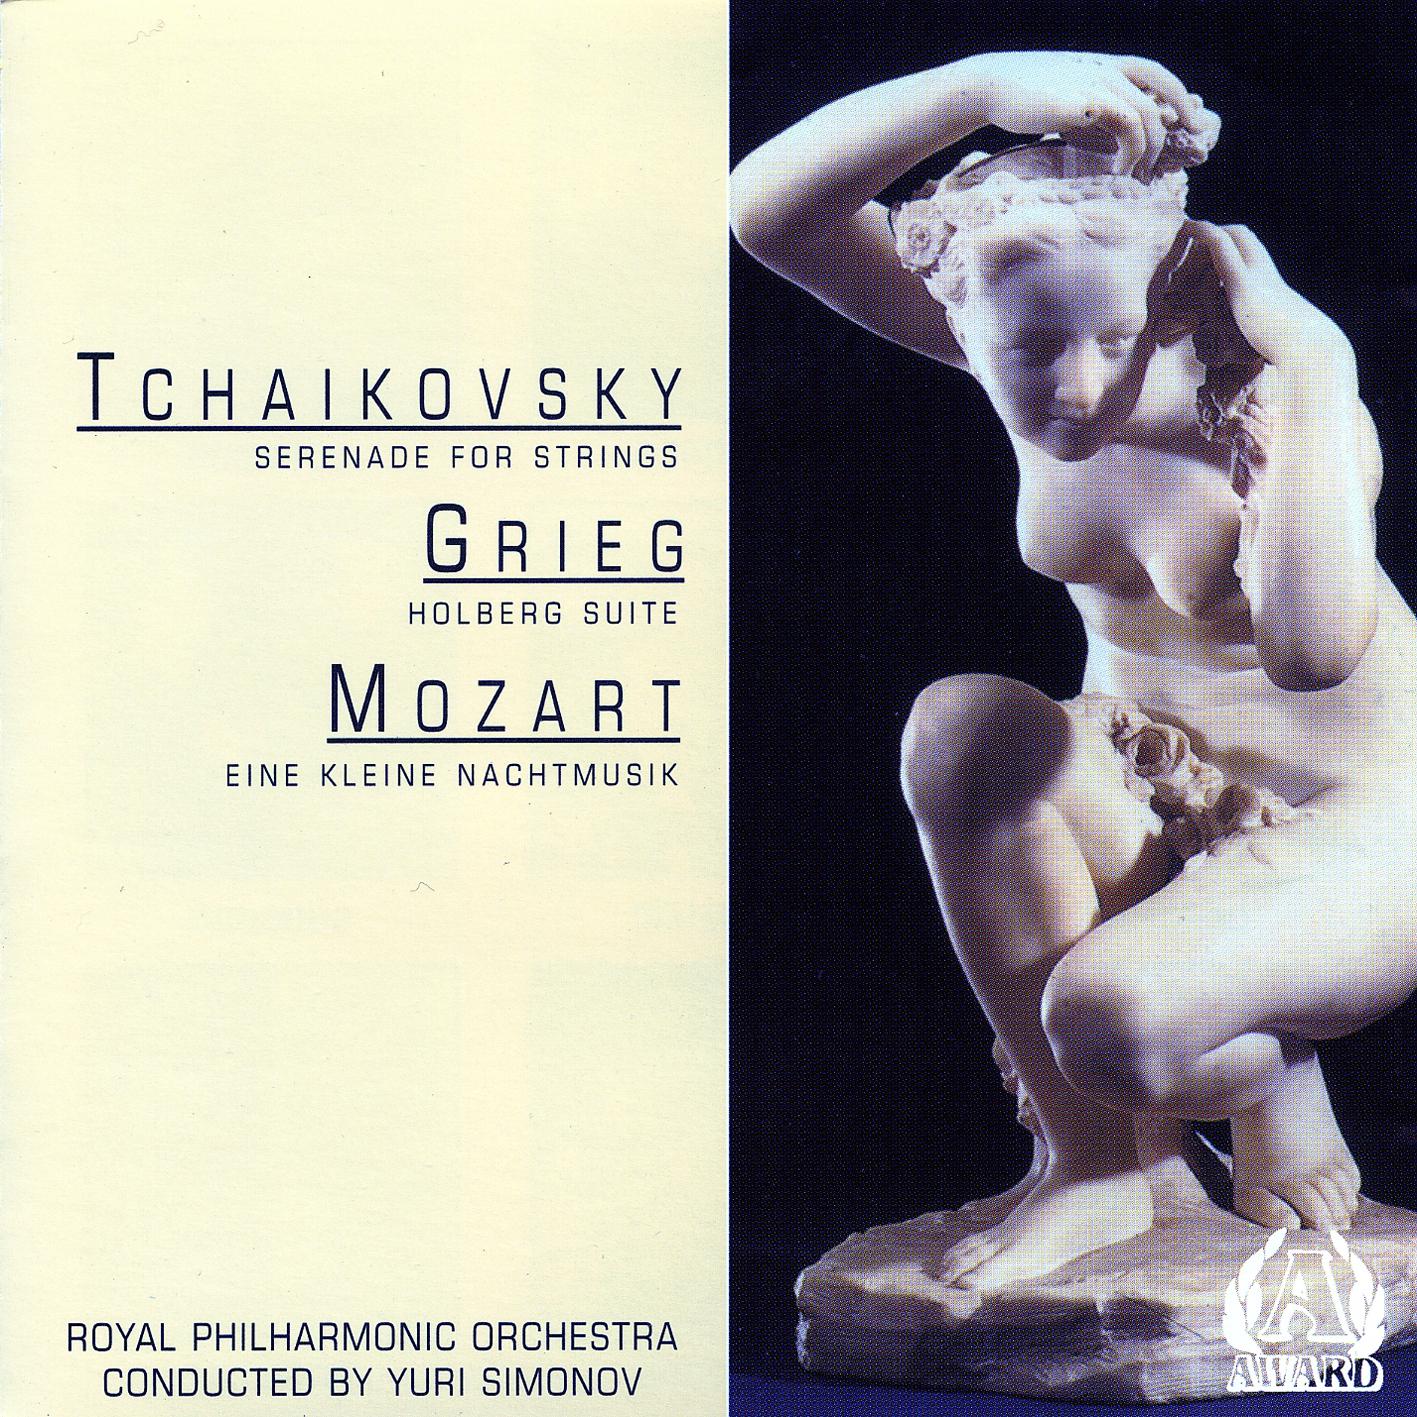 Royal Philharmonic Orchestra - Mozart - Eine Kleine Nachtmusik - Rondo-allegro